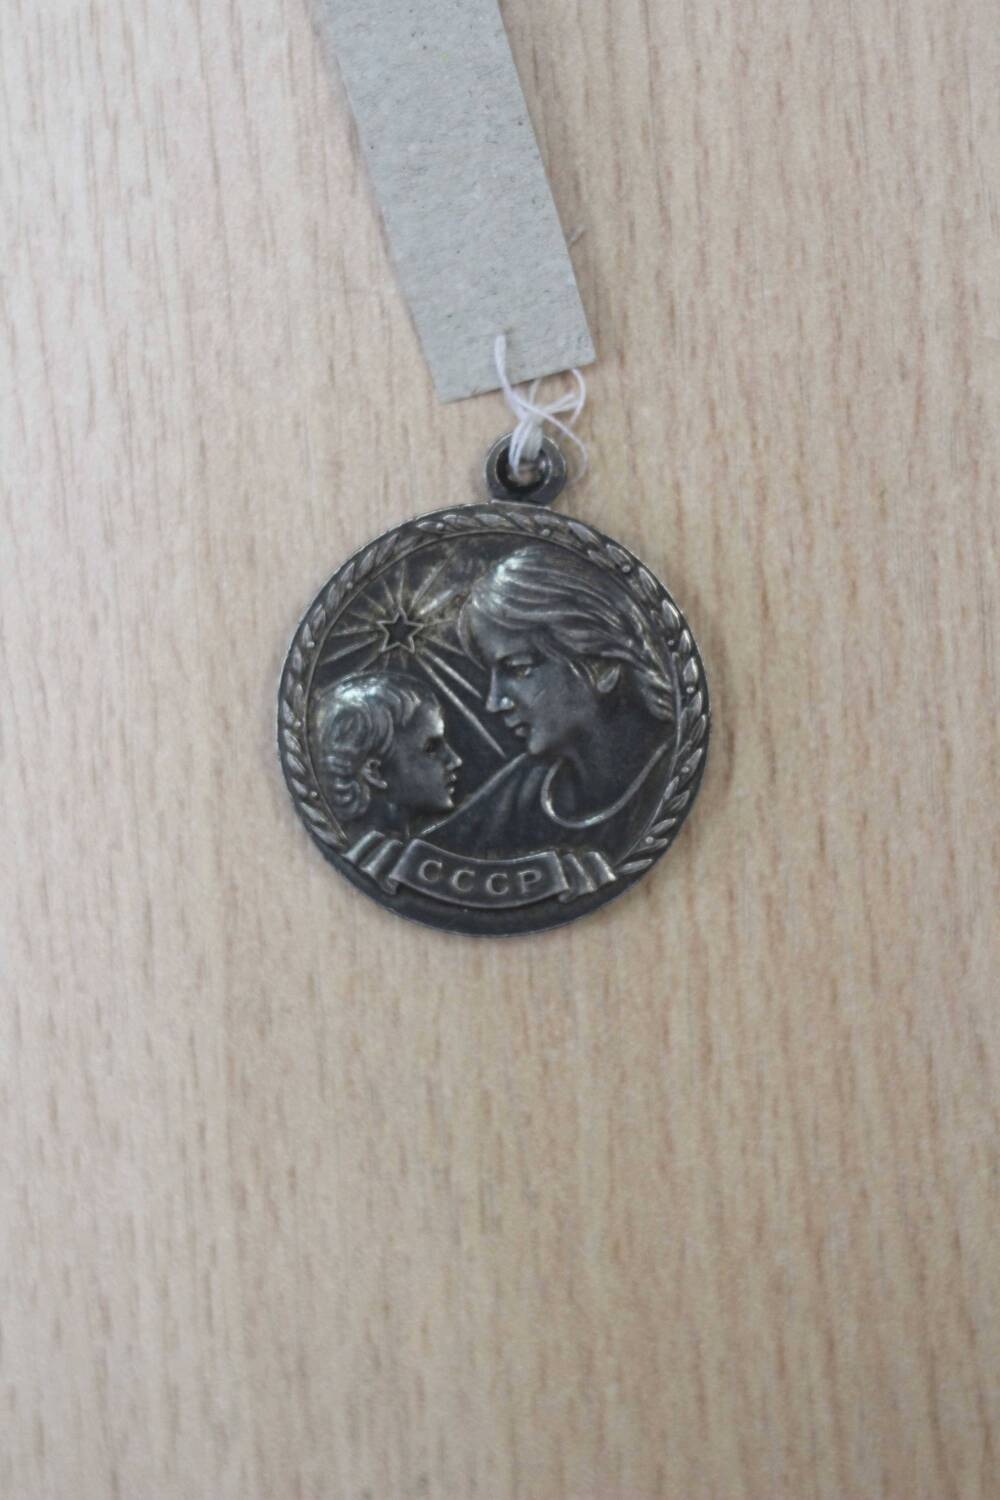 Медаль «Медаль материнства» I степени Циклаковой Анны Николаевны. 1957 год. Подлинник.